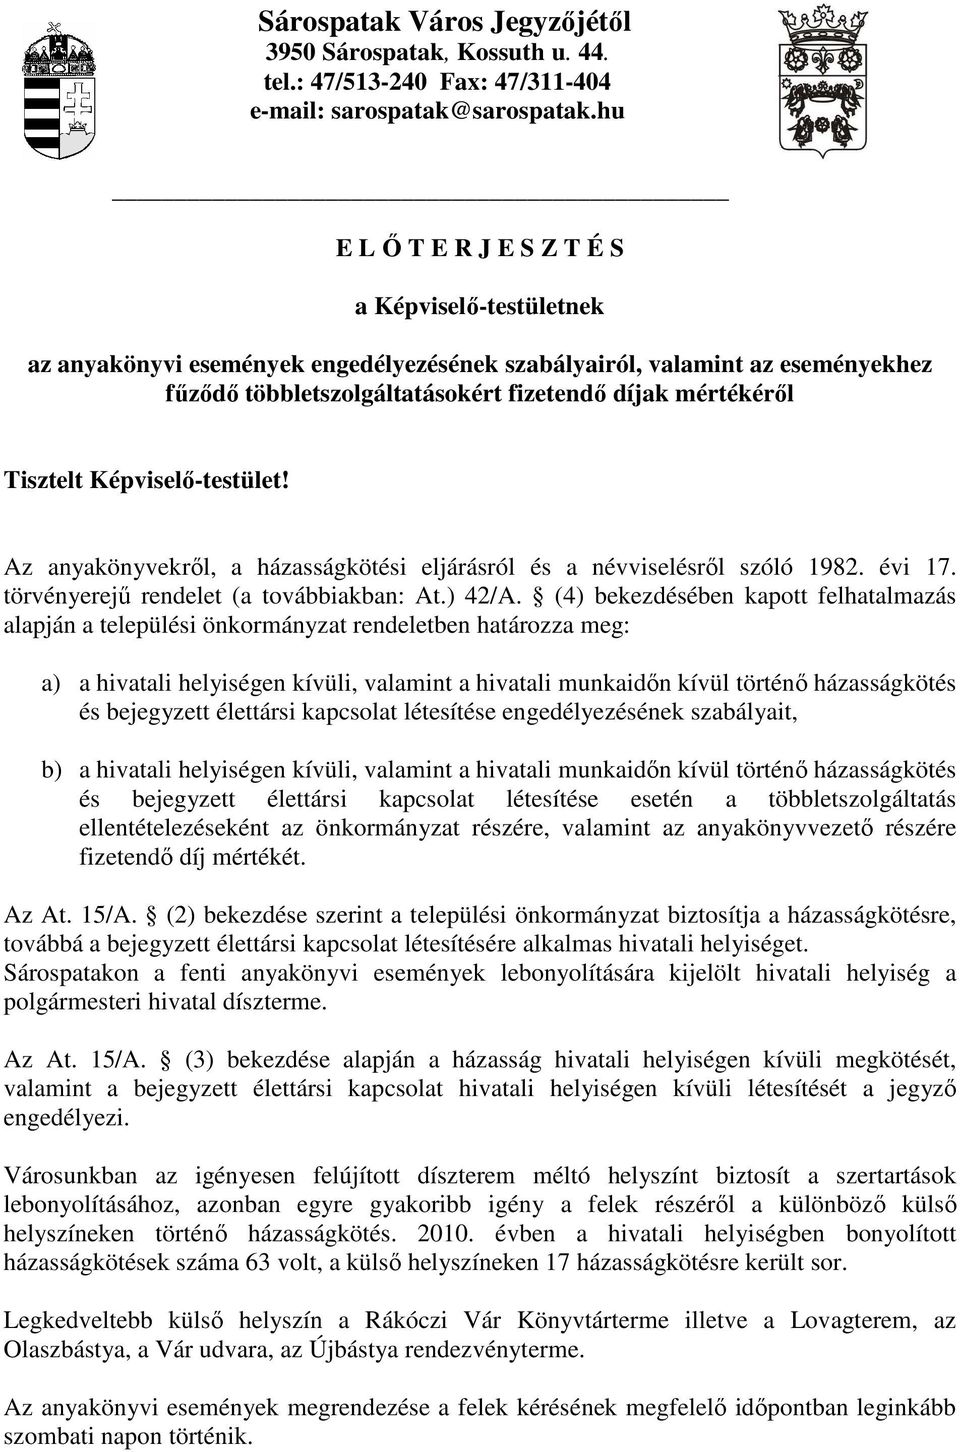 Tisztelt Képviselı-testület! Az anyakönyvekrıl, a házasságkötési eljárásról és a névviselésrıl szóló 1982. évi 17. törvényerejő rendelet (a továbbiakban: At.) 42/A.